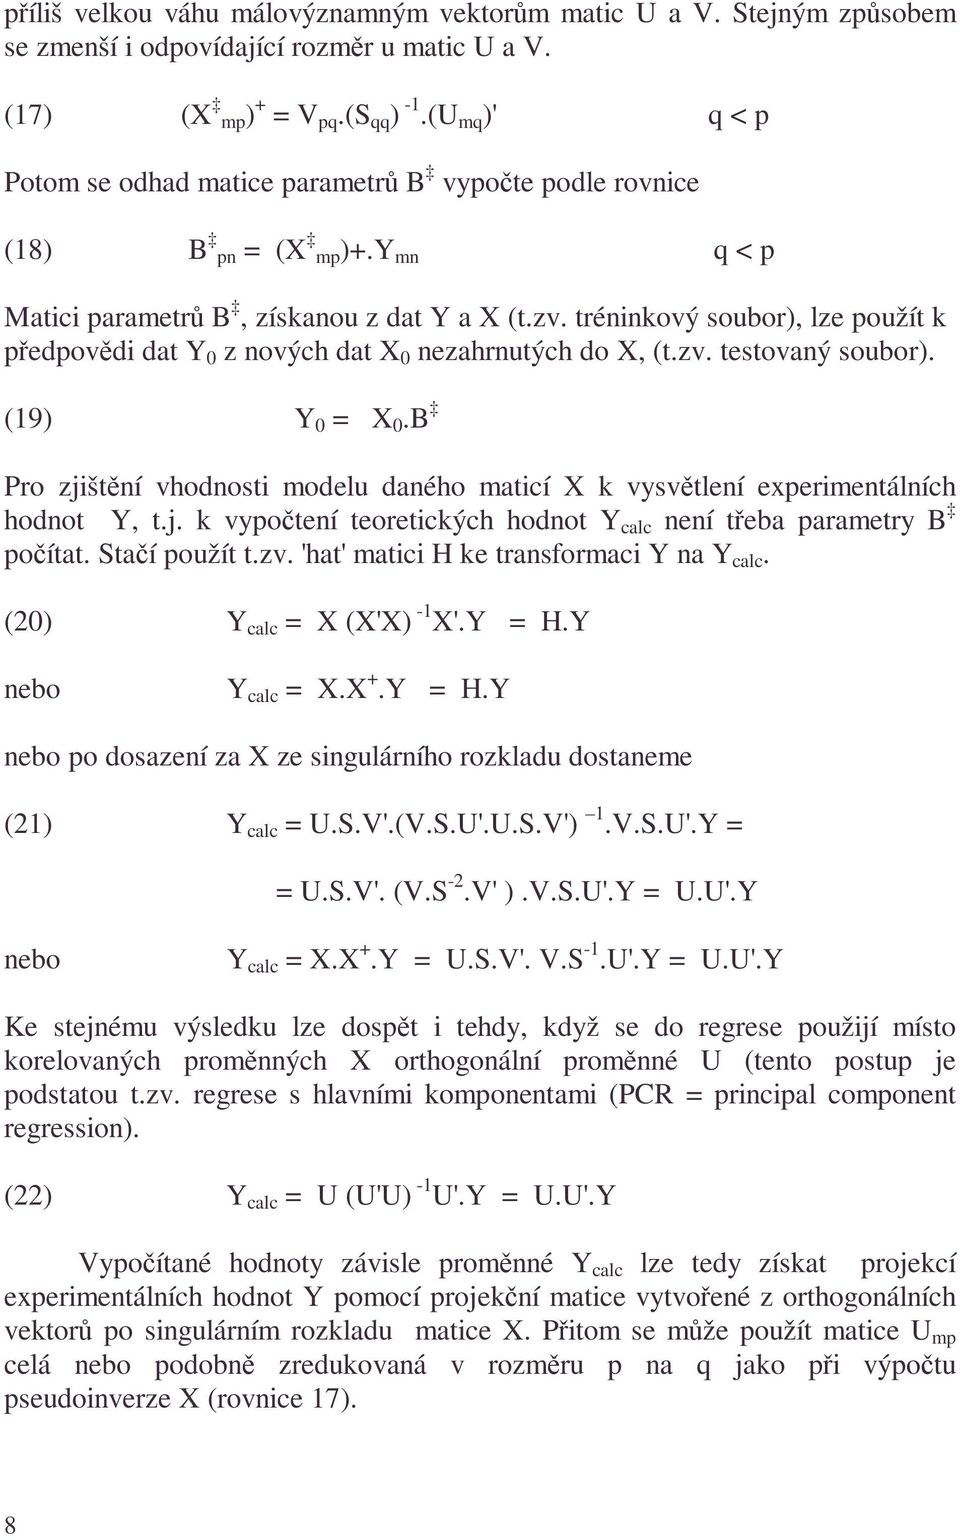 réninkový soubor), lze použí k předpovědi da Y z nových da X nezahrnuých do X, (.zv. esovaný soubor). (9) Y X. Pro zjišění vhodnosi modelu daného maicí X k vysvělení experimenálních hodno Y,.j. k vypočení eoreických hodno Y calc není řeba paramery počía.